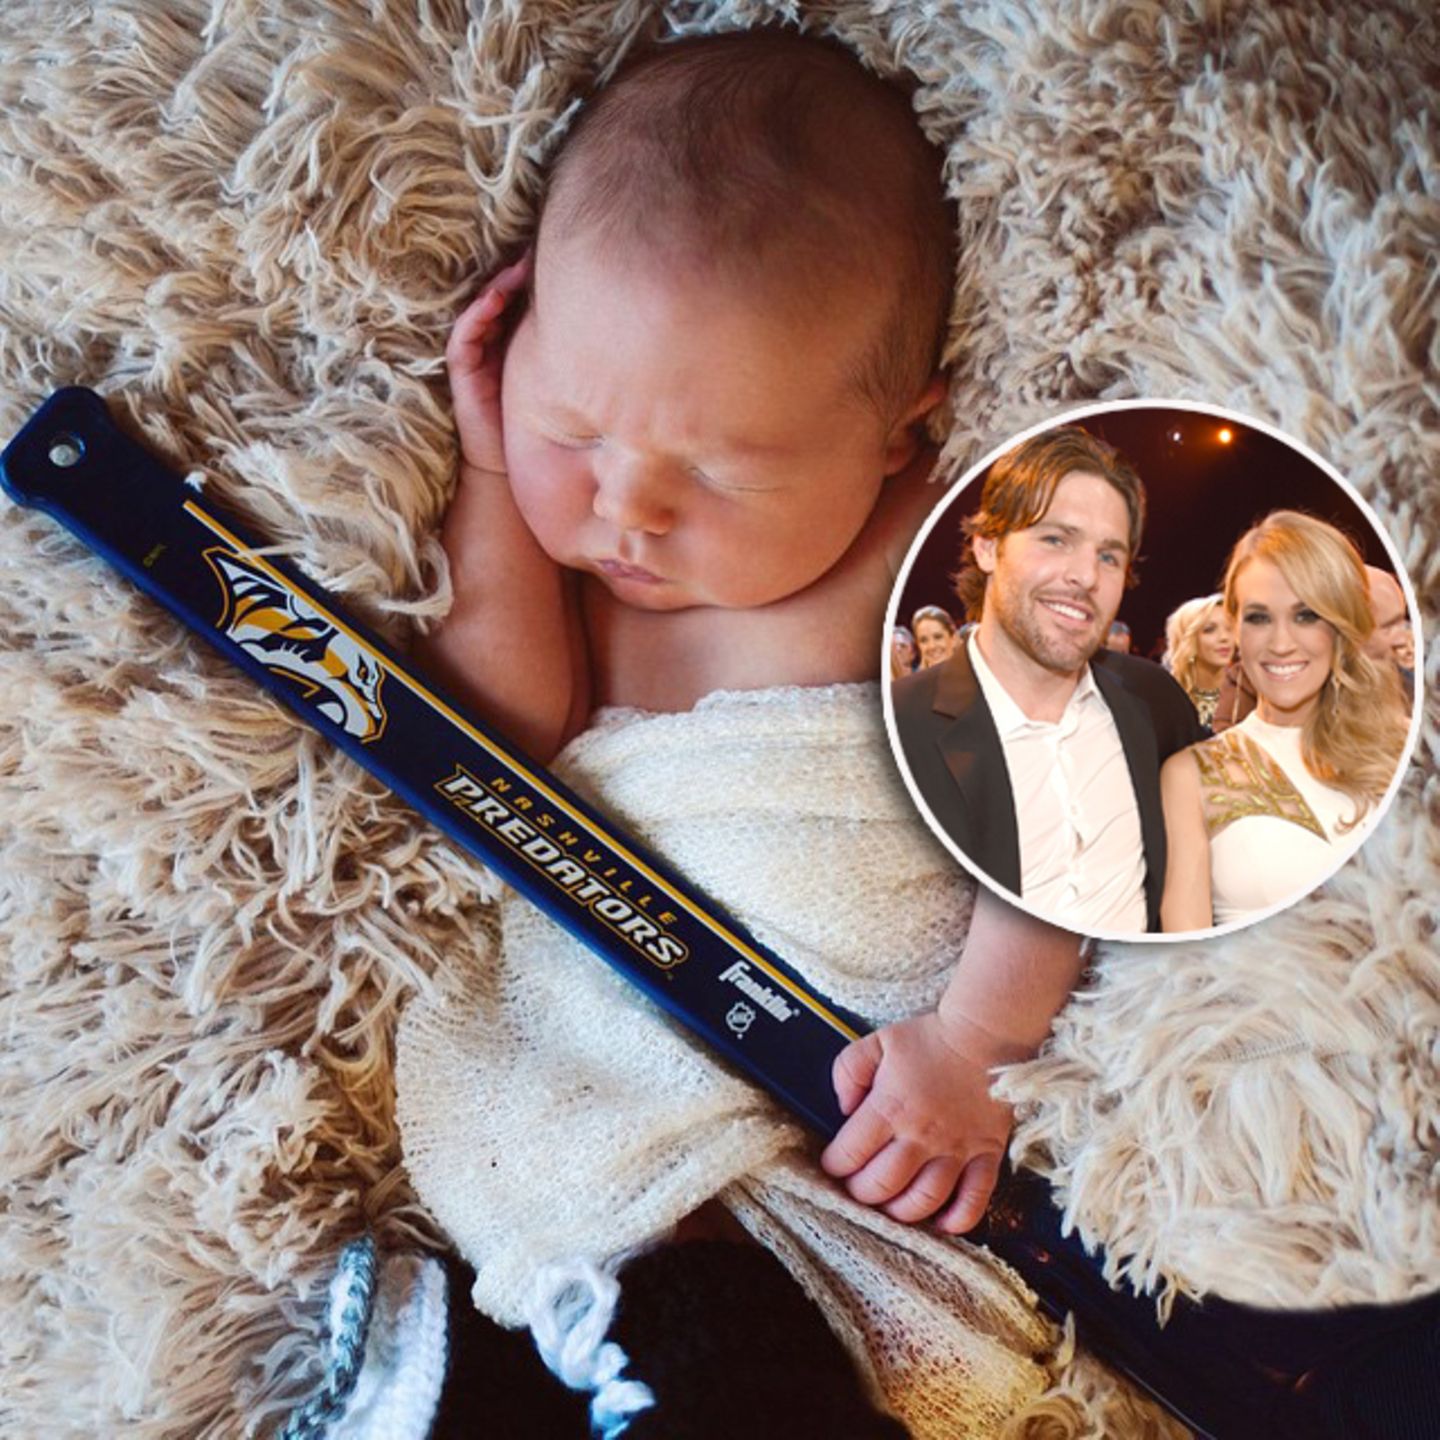 März 2015: Countrysängerin Carrie Underwood teilt auf Instagram ein erstes richtiges Foto ihres Söhnchens Isaiah. In seine winzige Hand hat sie einen Mini-Hockeyschläger gelegt. Der Vater des Kleinen, Mike Fisher, ist Profispieler bei den "Nashville Predators".